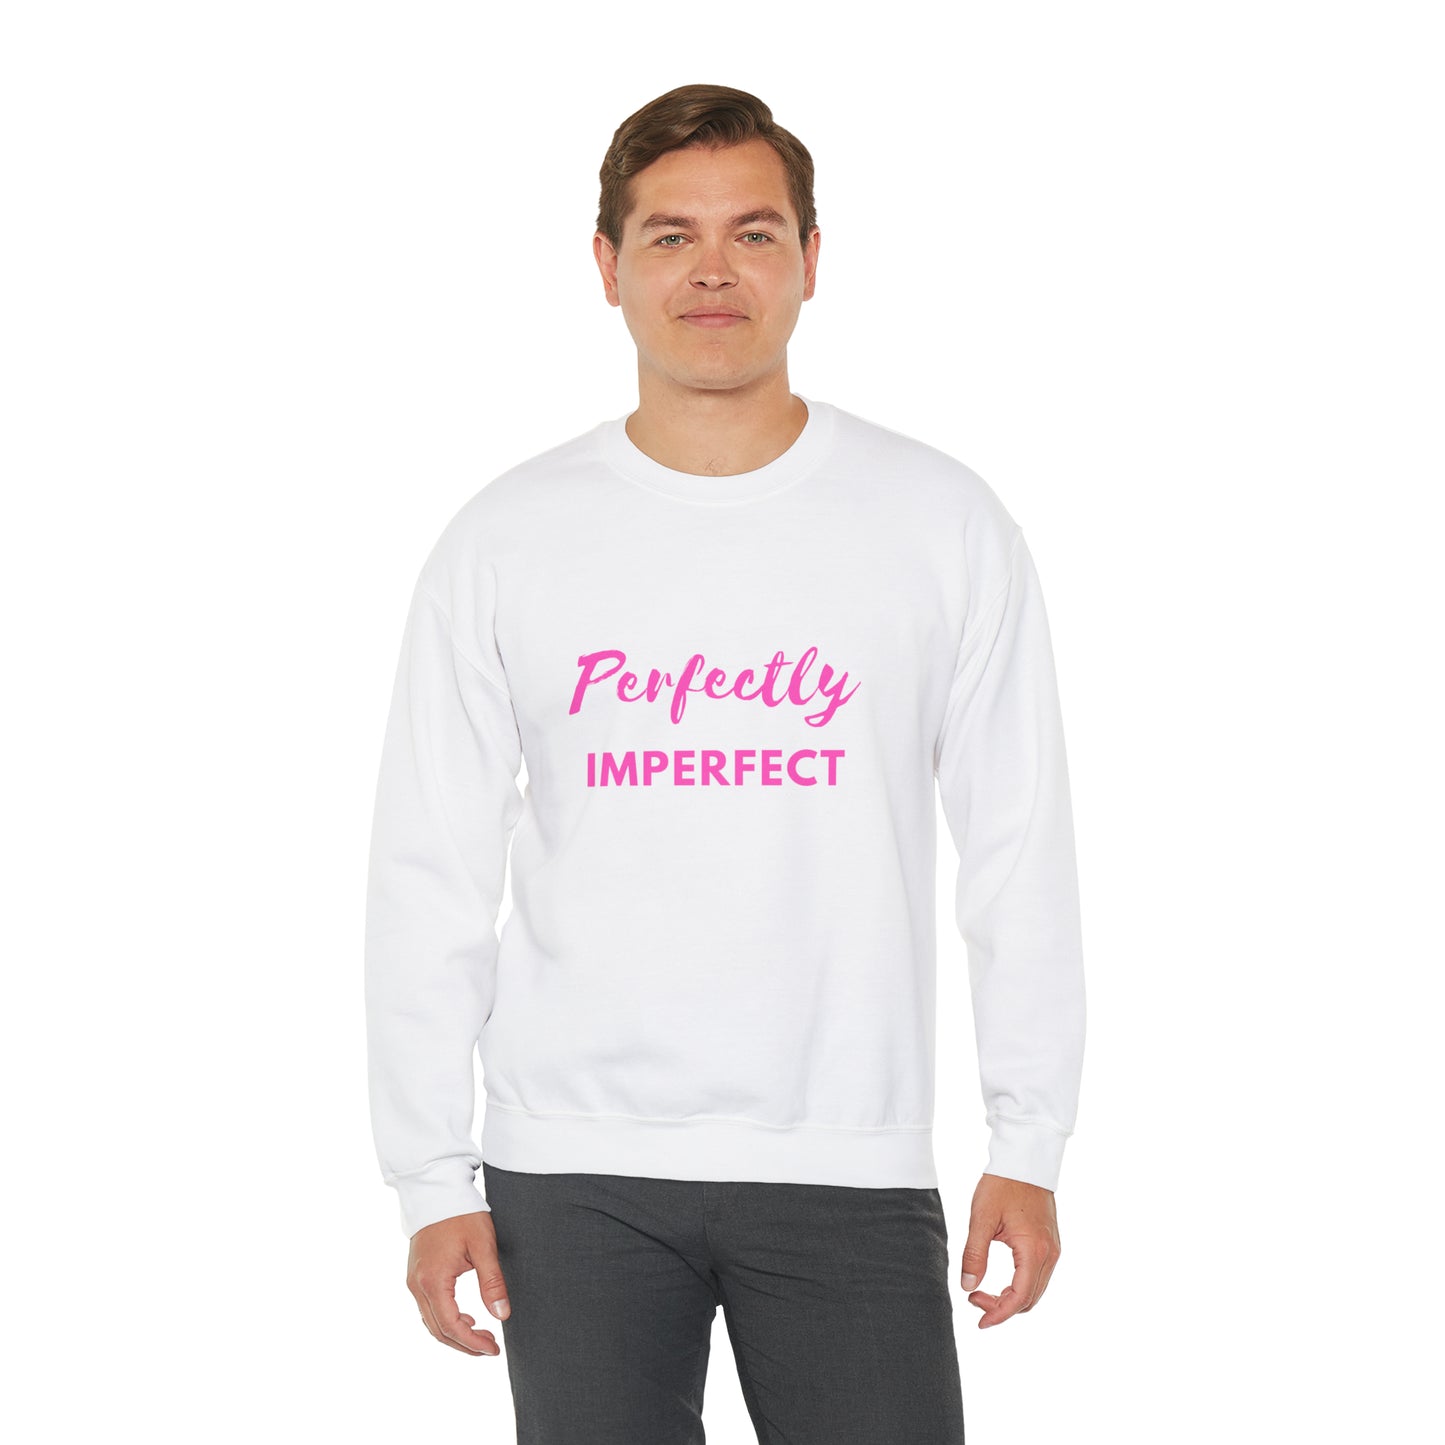 "Perfectly Imperfect" Sweatshirt